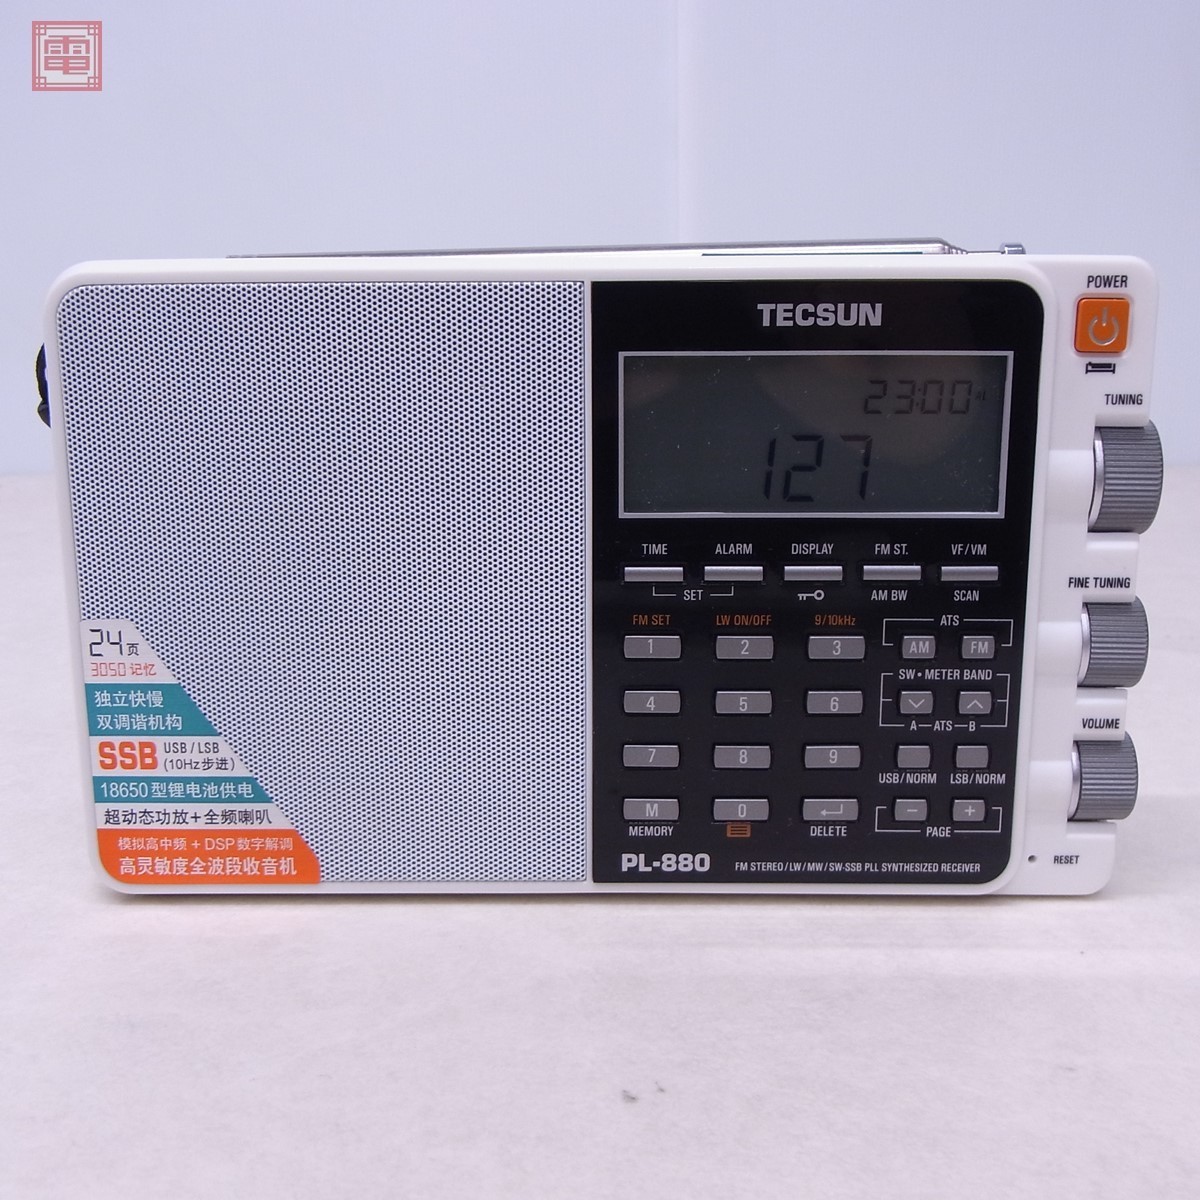  прекрасный товар Tec солнечный TECSUN PL-880 AM/FM/SW BCL радио специальный чехол * руководство пользователя *ICR-100 есть [20